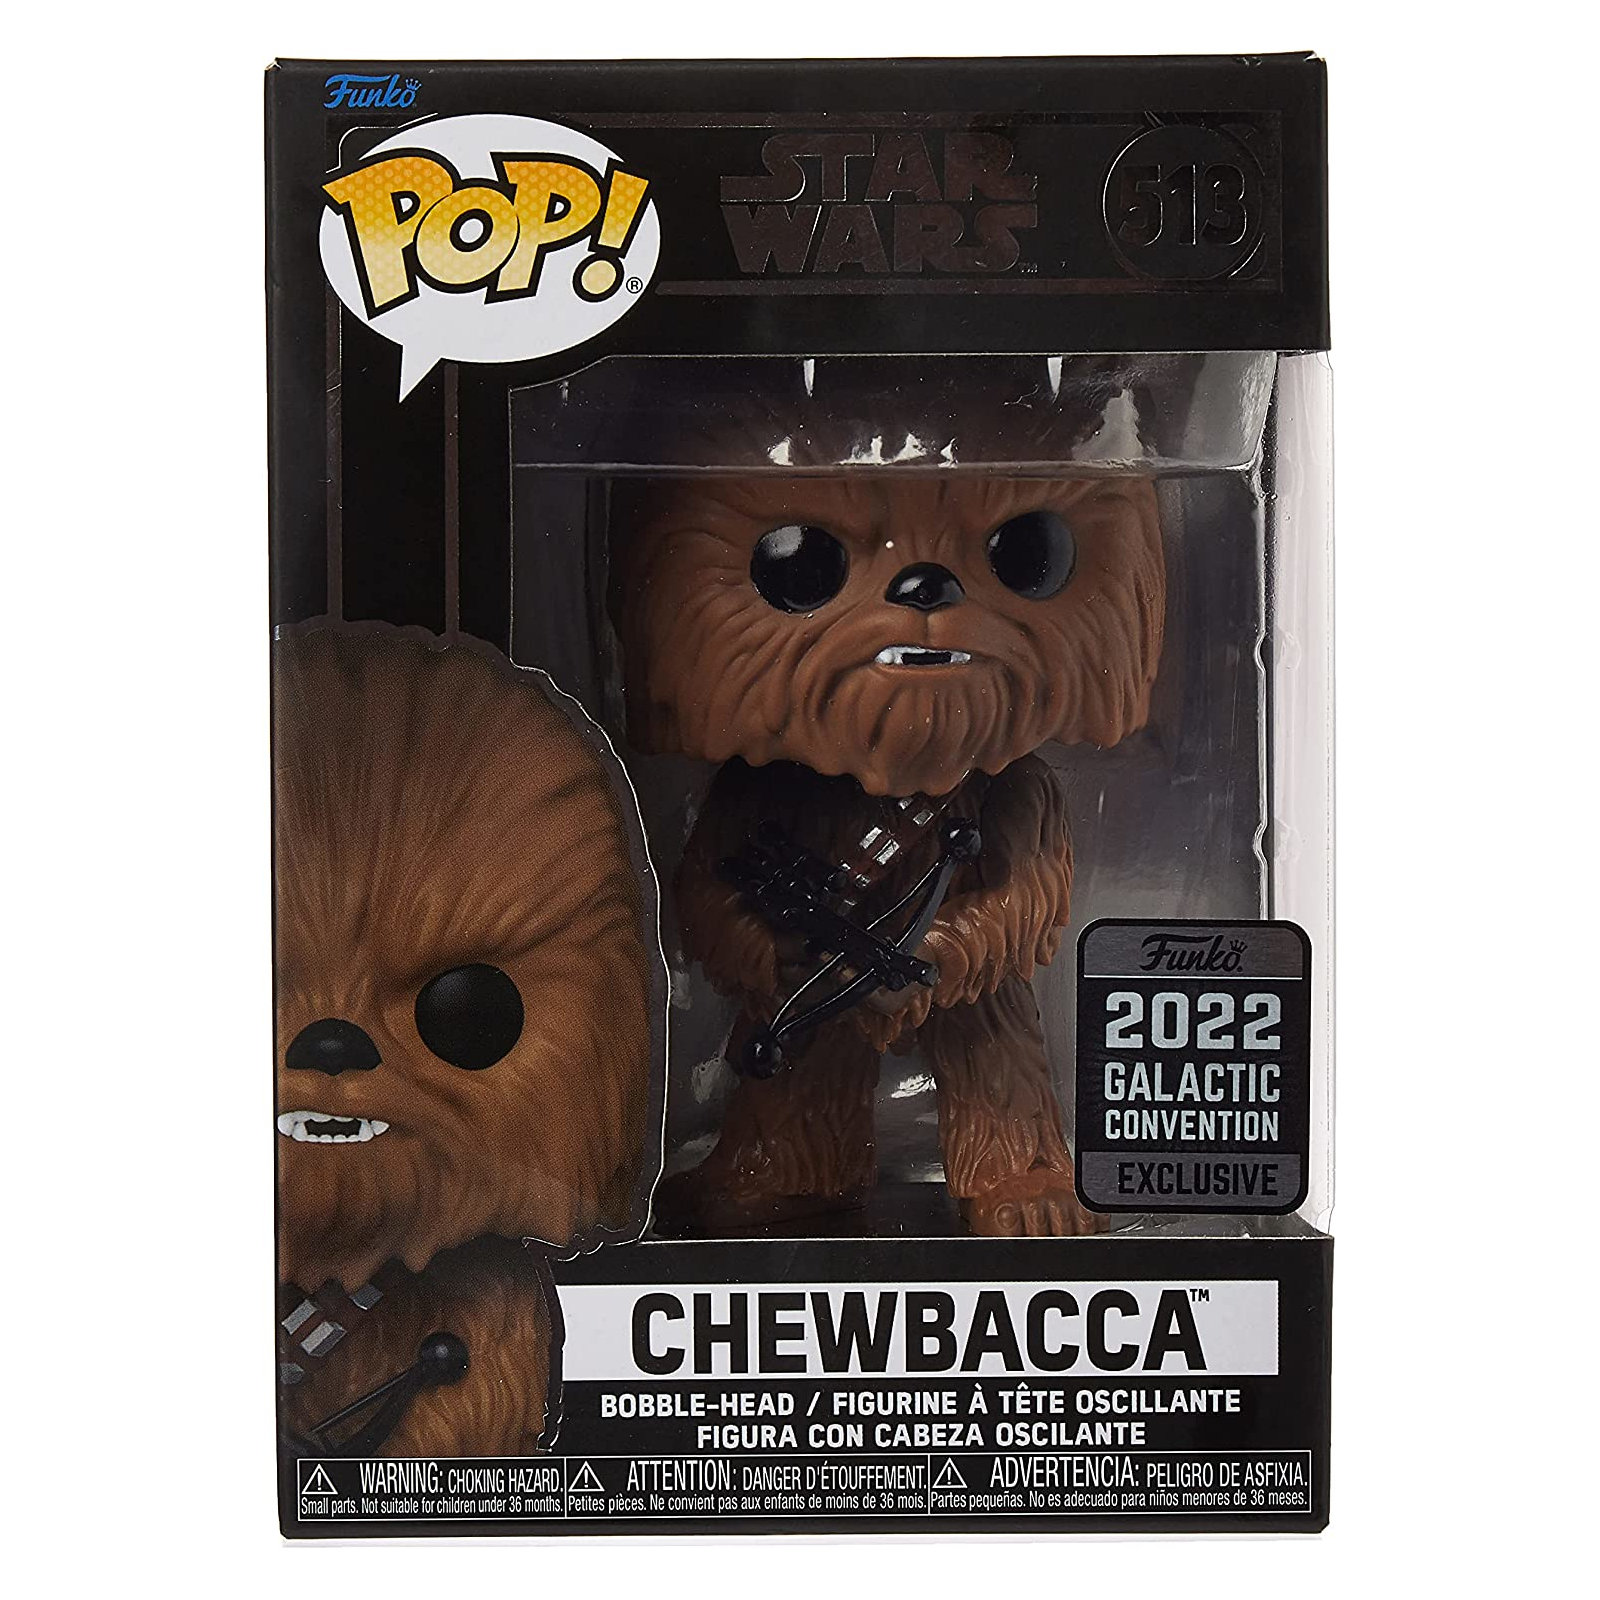 Фигурка Funko Pop! Star Wars Galactic Convention 2022 Exclusive Chewbacca фигурка funko pop star wars galactic convention 2022 exclusive chewbacca